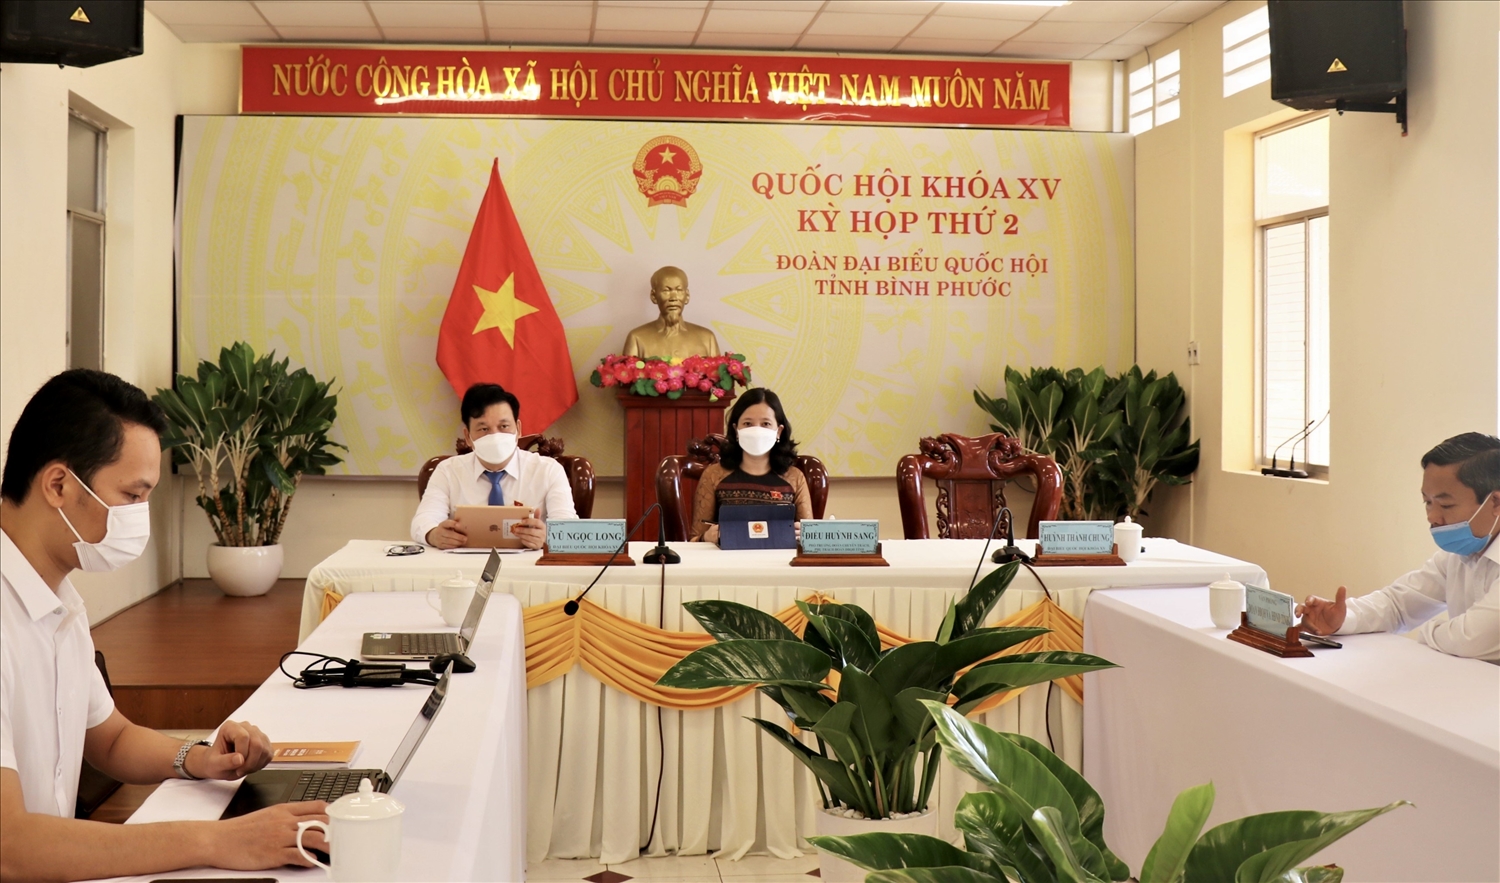 Đoàn ĐBQH tỉnh Bình Phước dự họp trực tuyến kỳ họp thứ 2, Quốc hội Khóa XV.